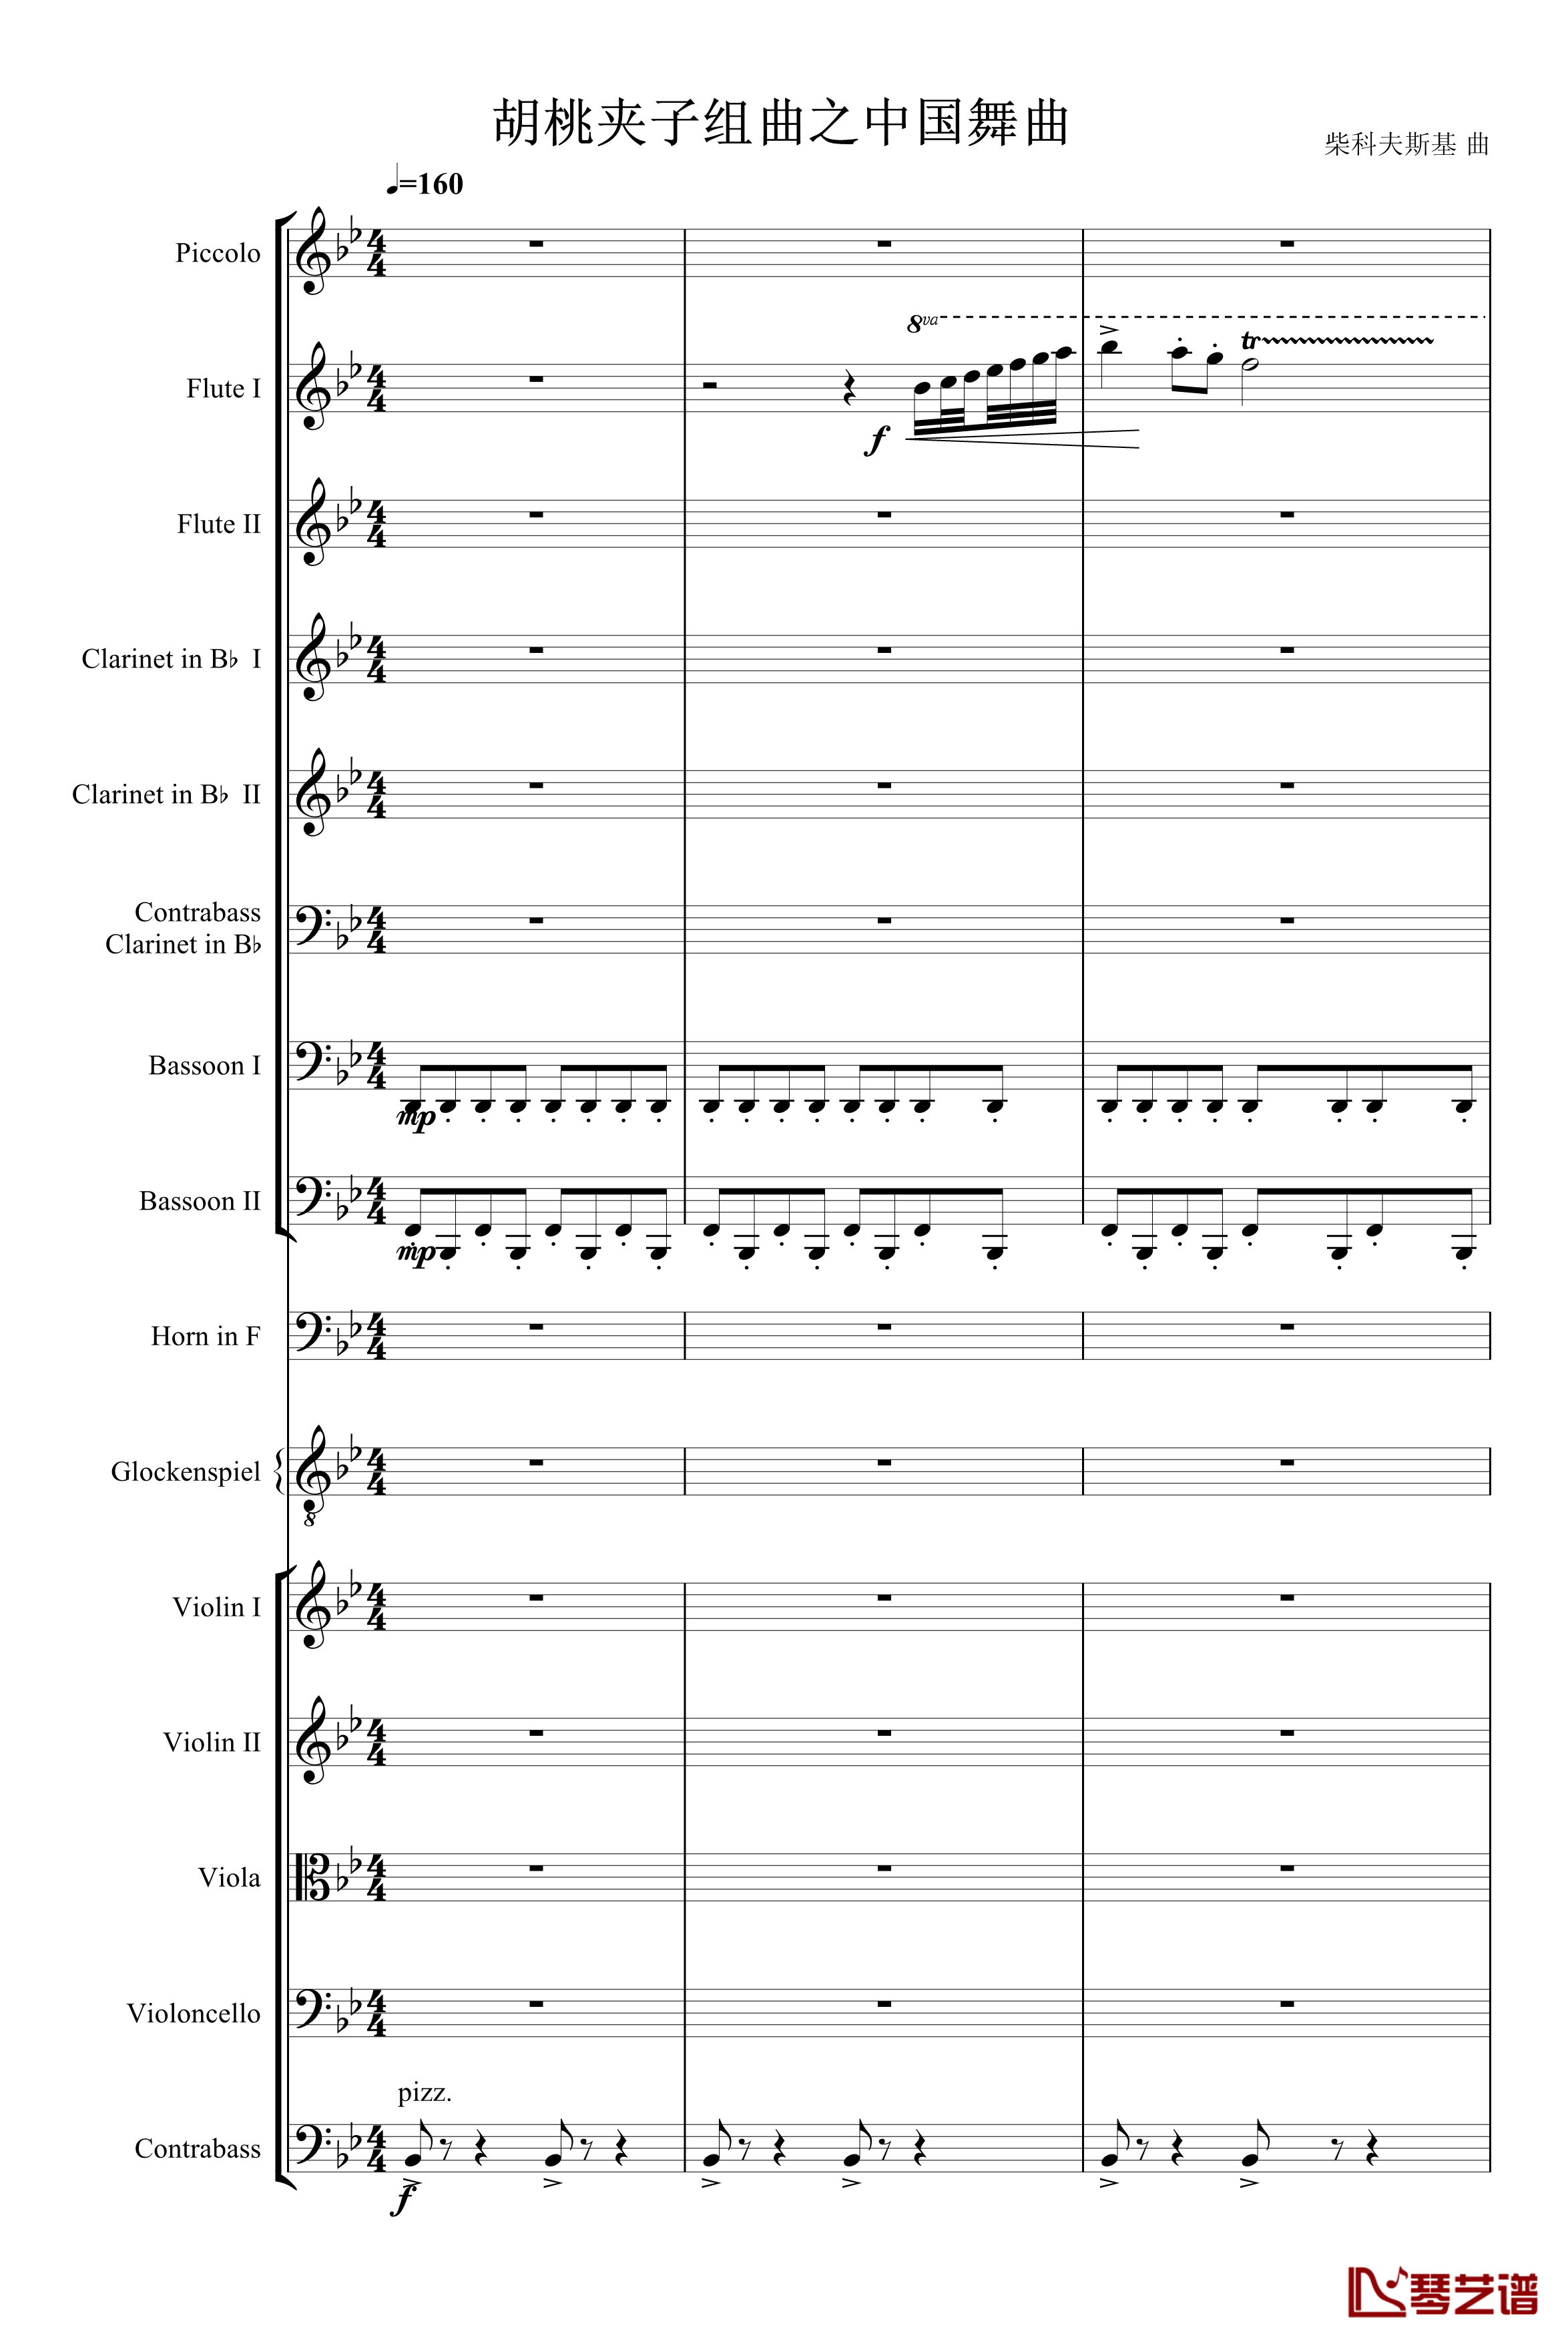 胡桃夹子组曲茶钢琴谱-柴科夫斯基-Peter Ilyich Tchaikovsky1